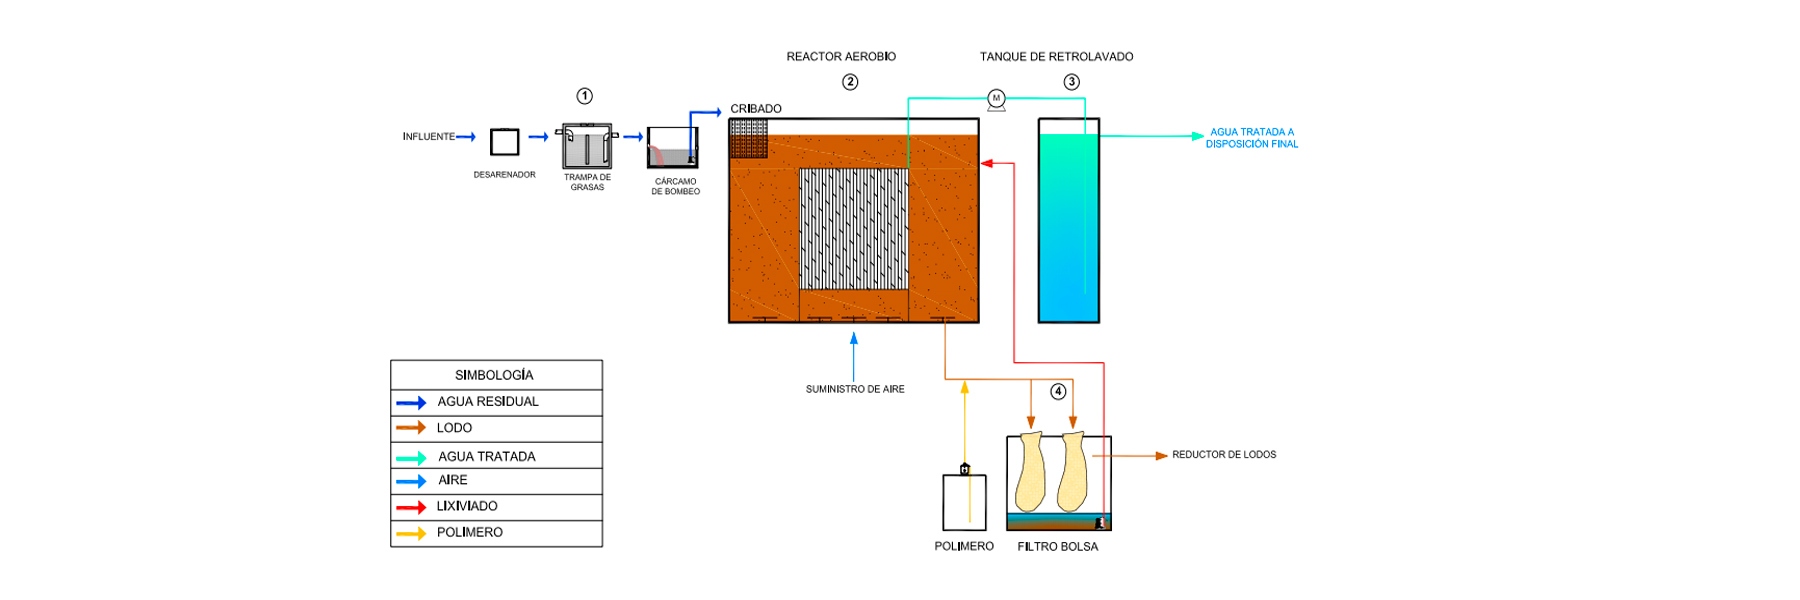 diagrama de flujo de planta de tratamiento aclarapak